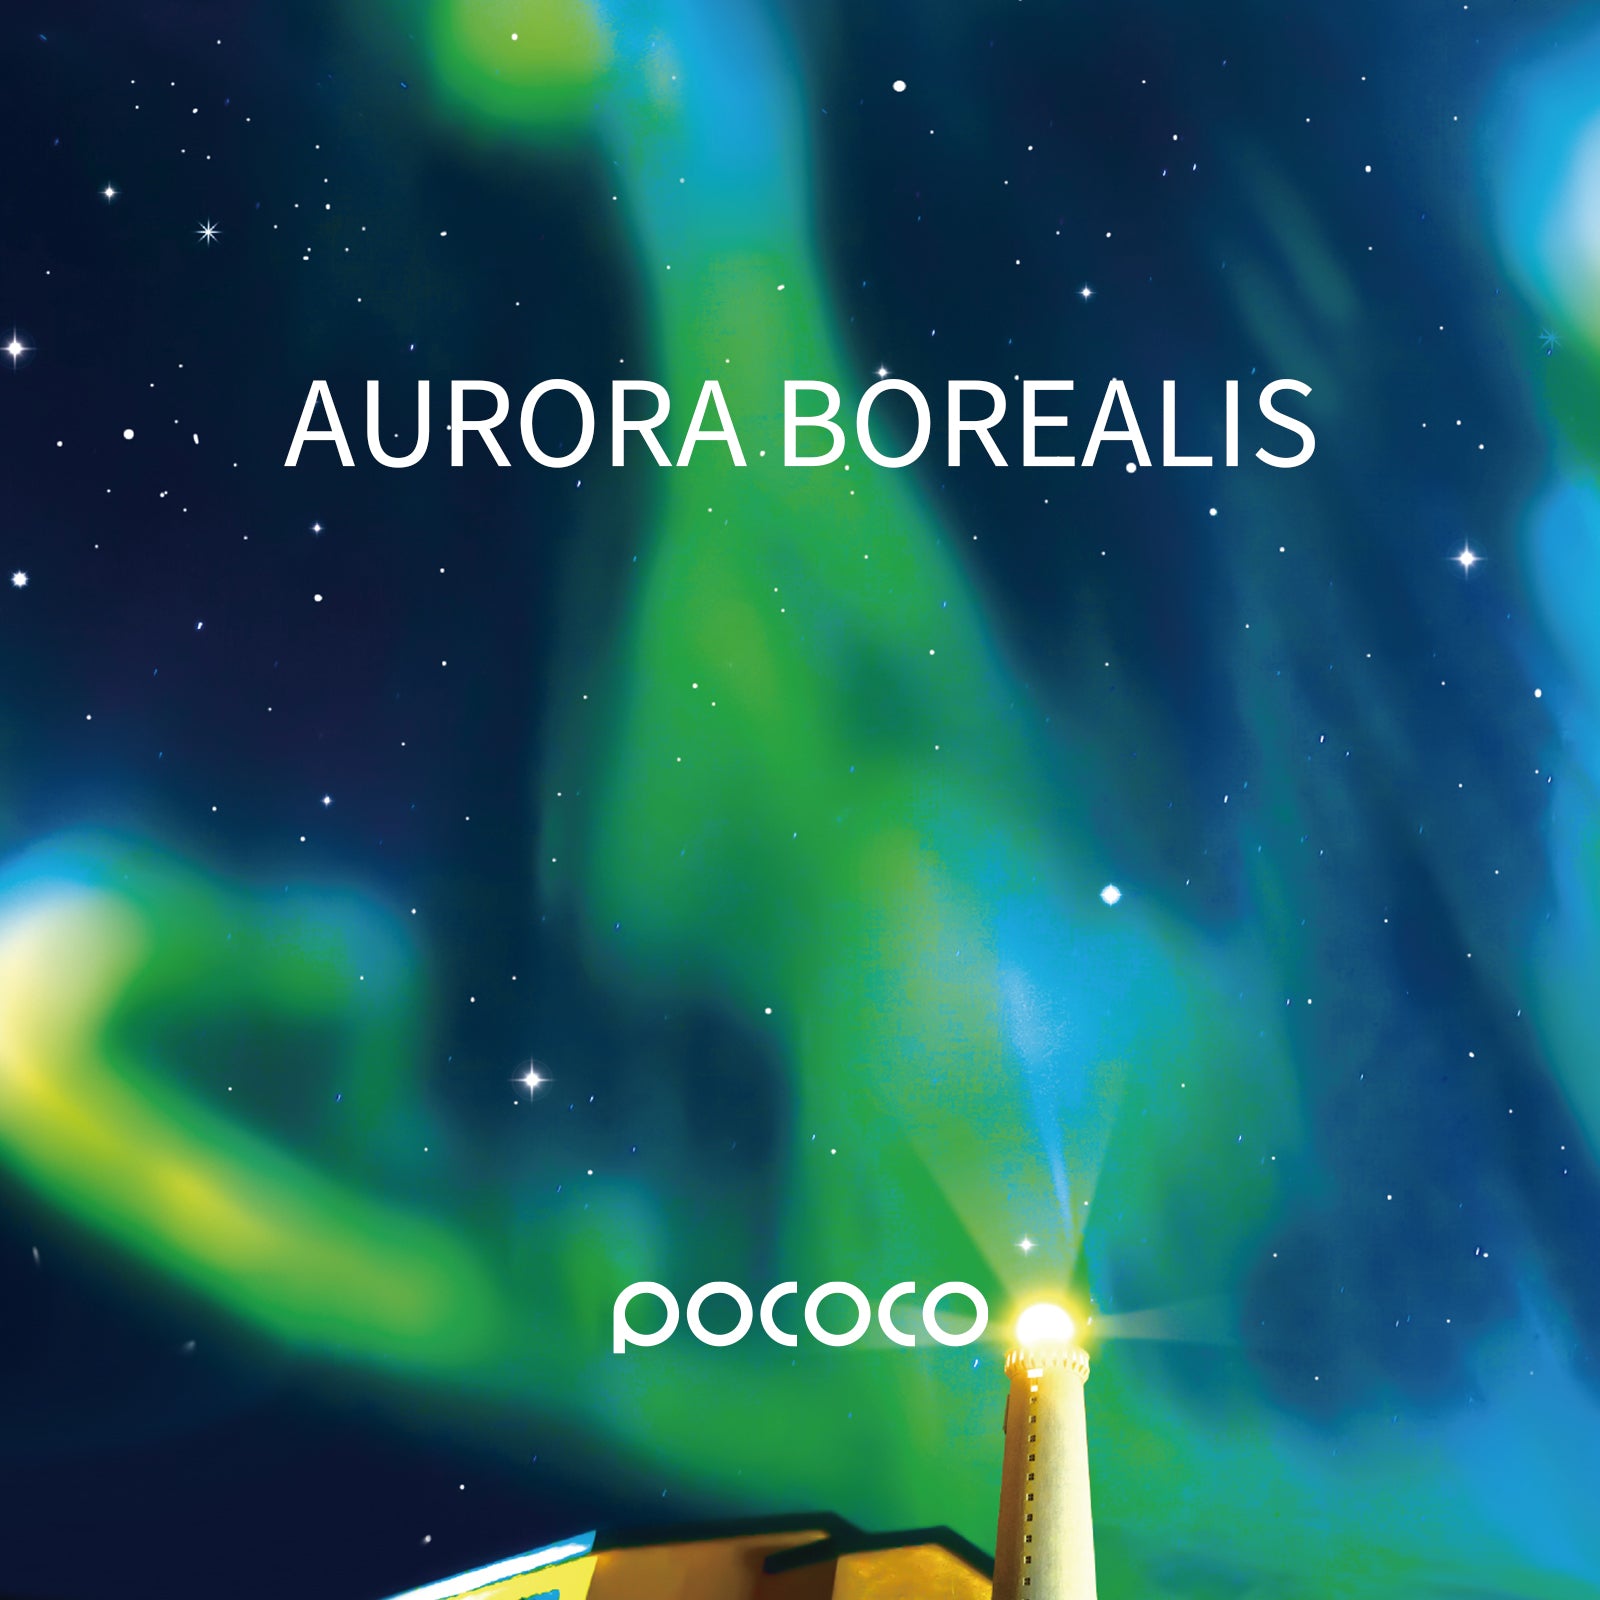 POCOCO Galaxy Projector Disc - Aurora Borealis